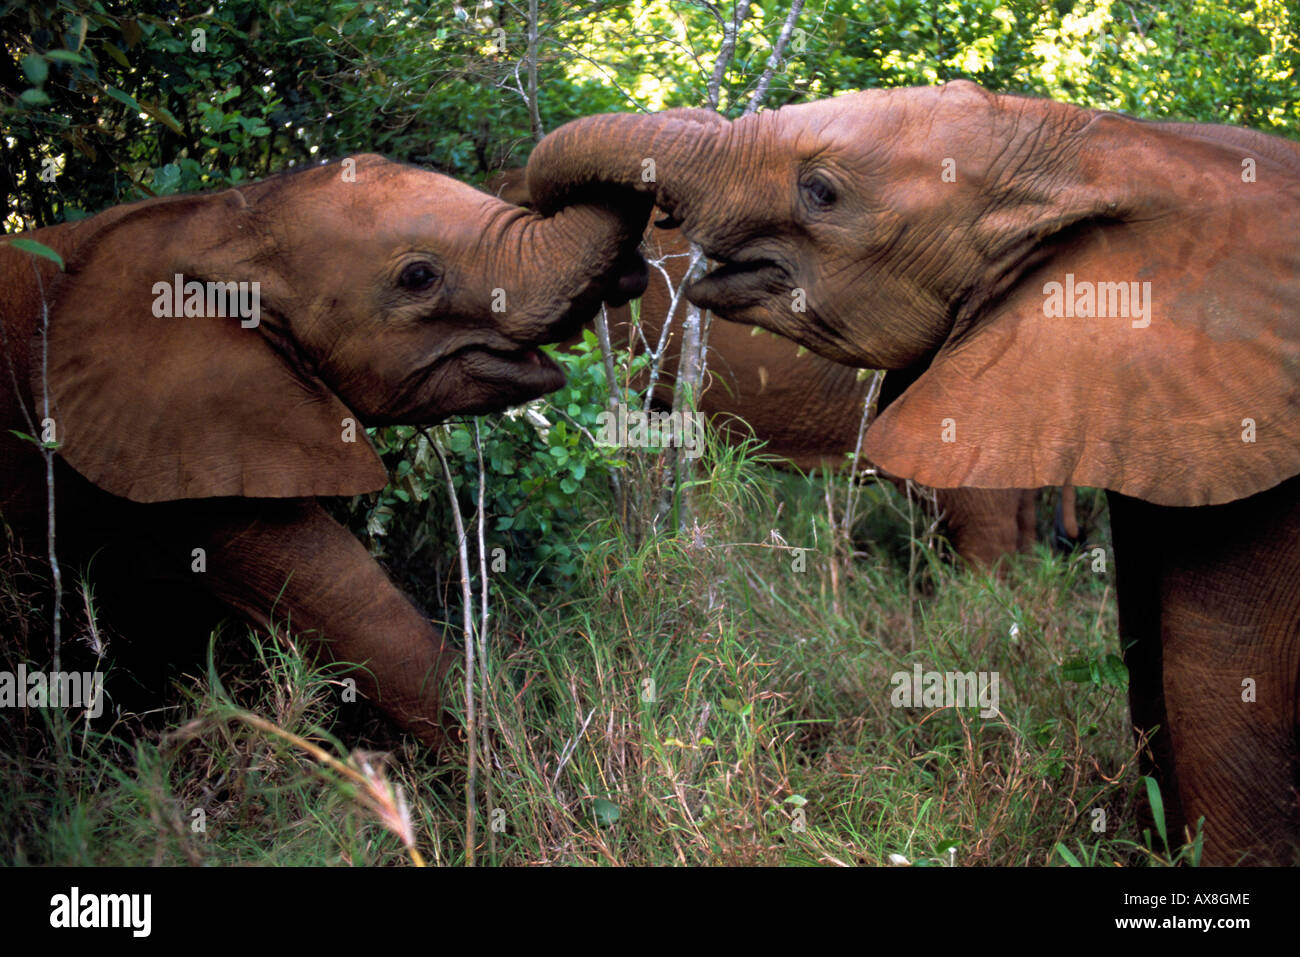 Junge afrikanische Elefanten Foto de stock